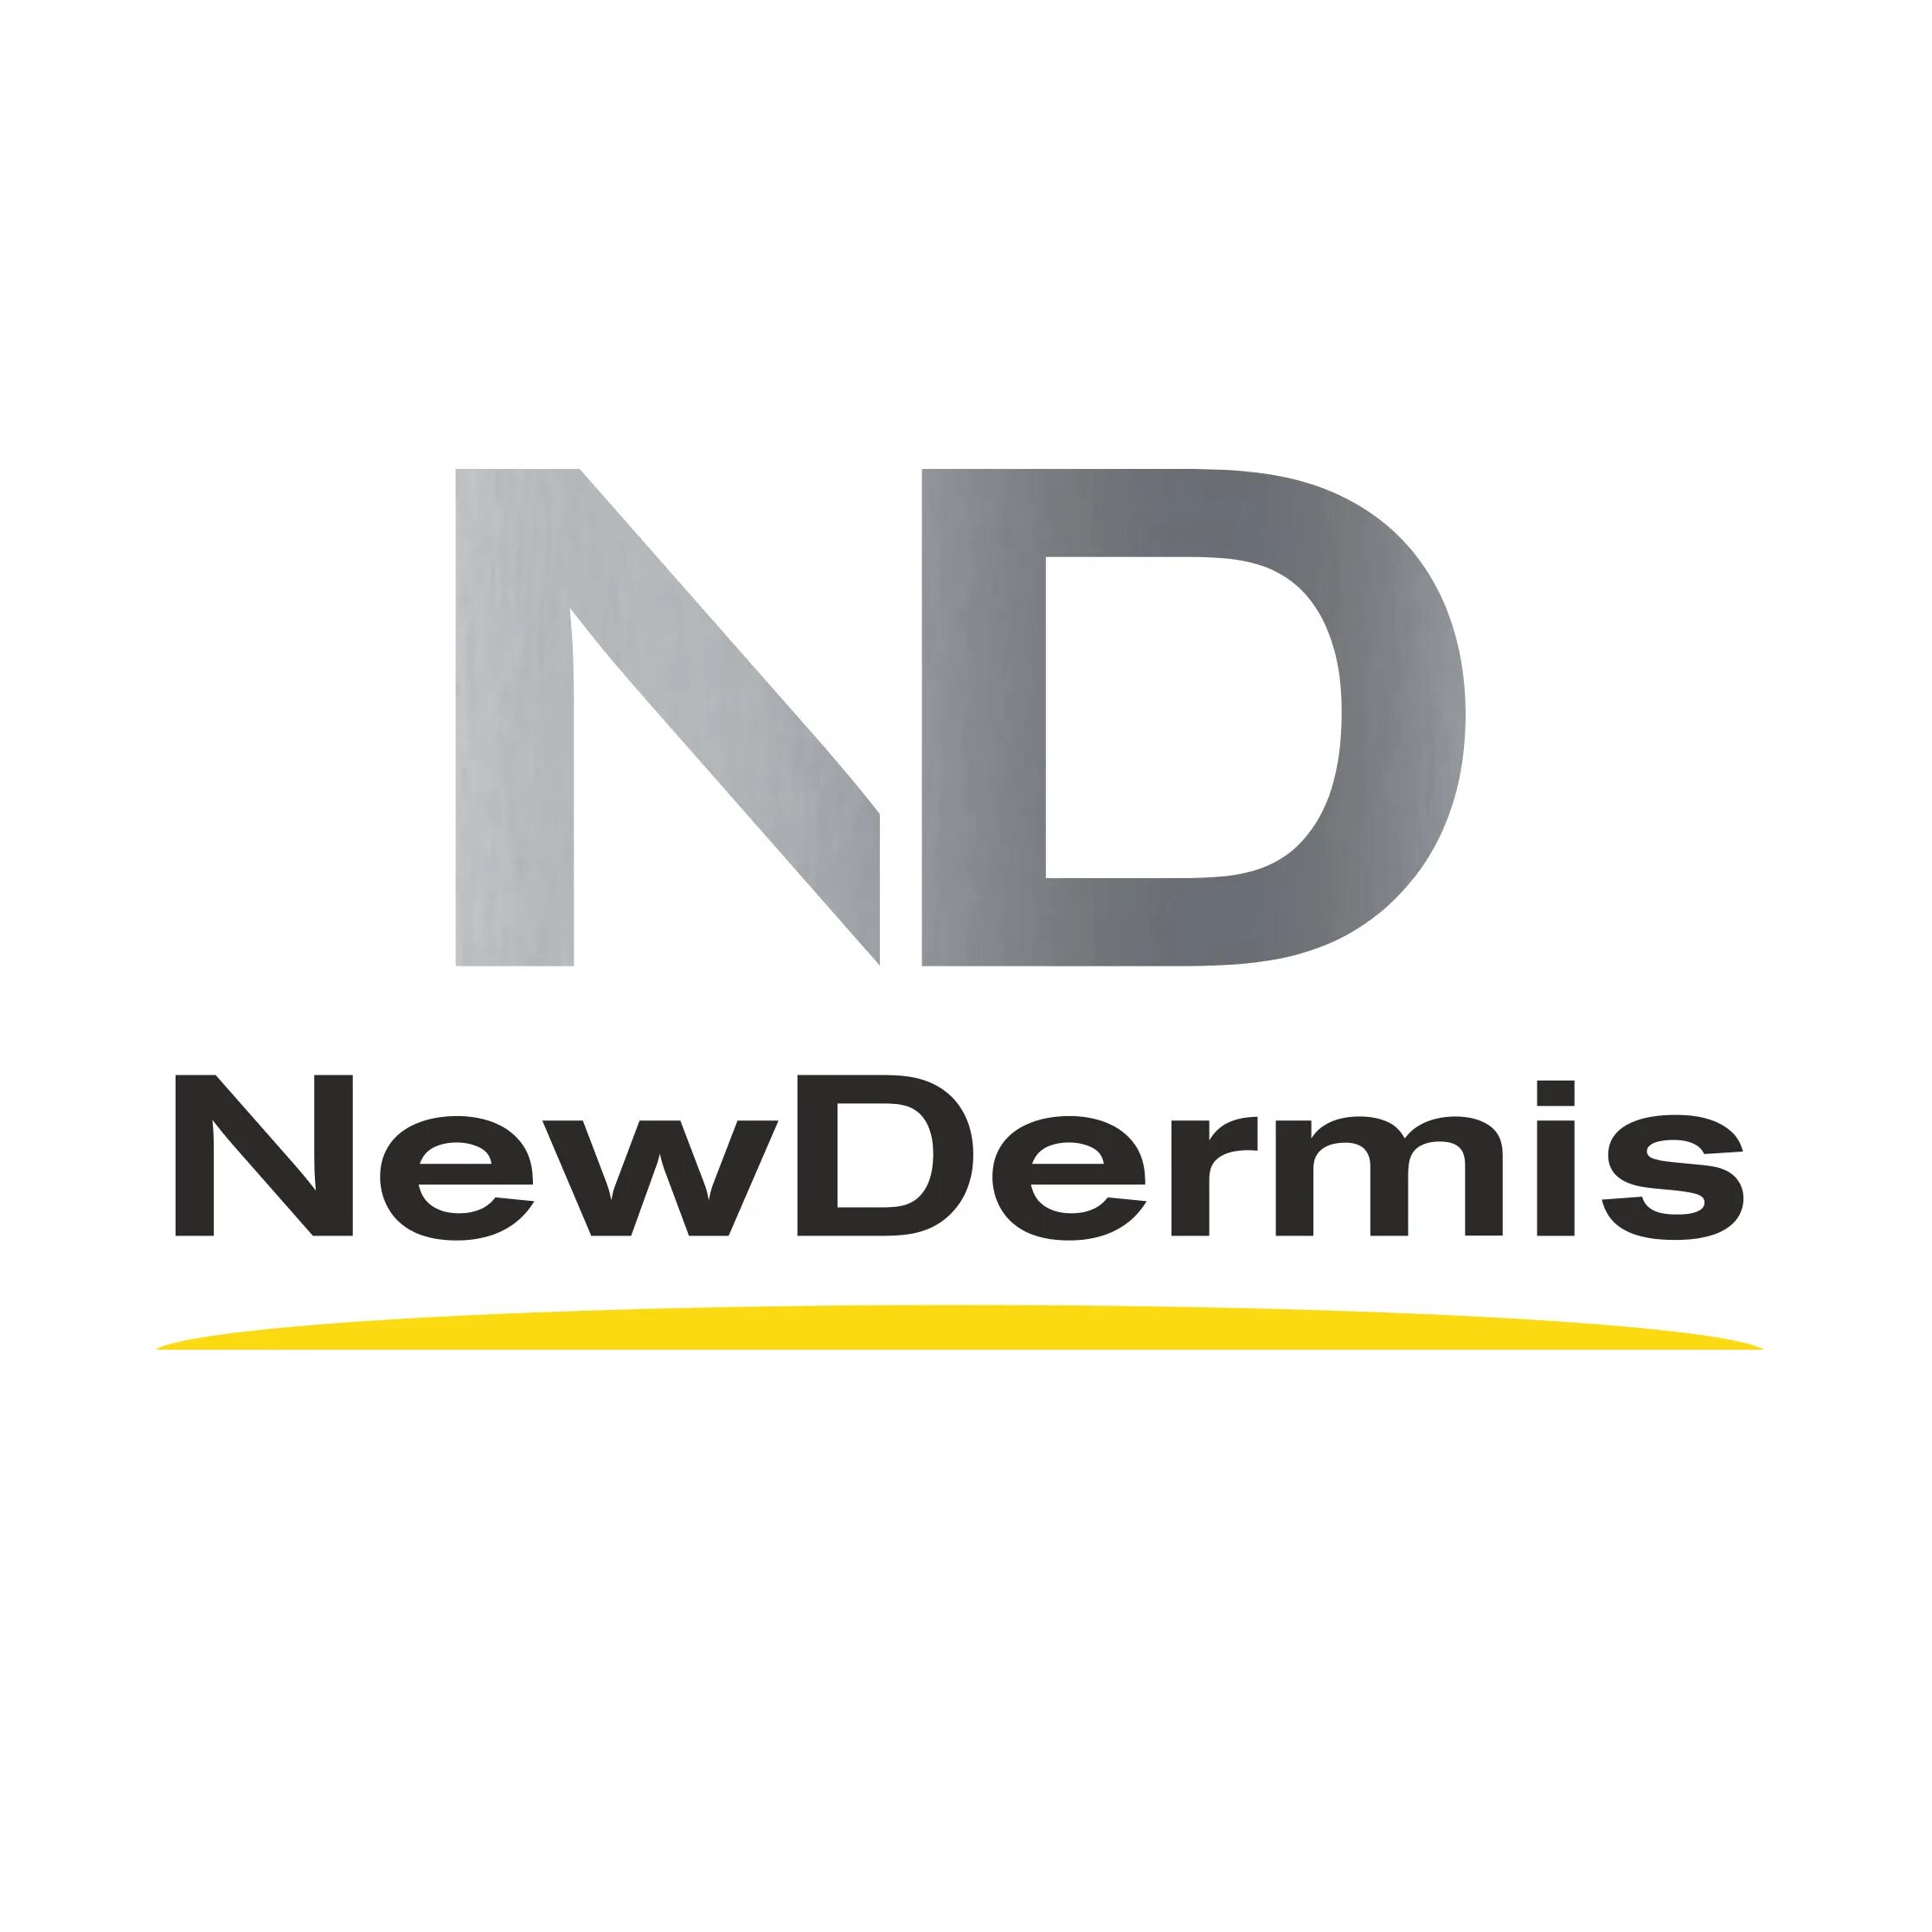 New dermis купить. Нью дермис солнцезащитный крем. Крем New dermis защита 50. Омолаживающий солнцезащитный крем SPF 50+ ppd24 newdermis. Newdermis крем производитель.